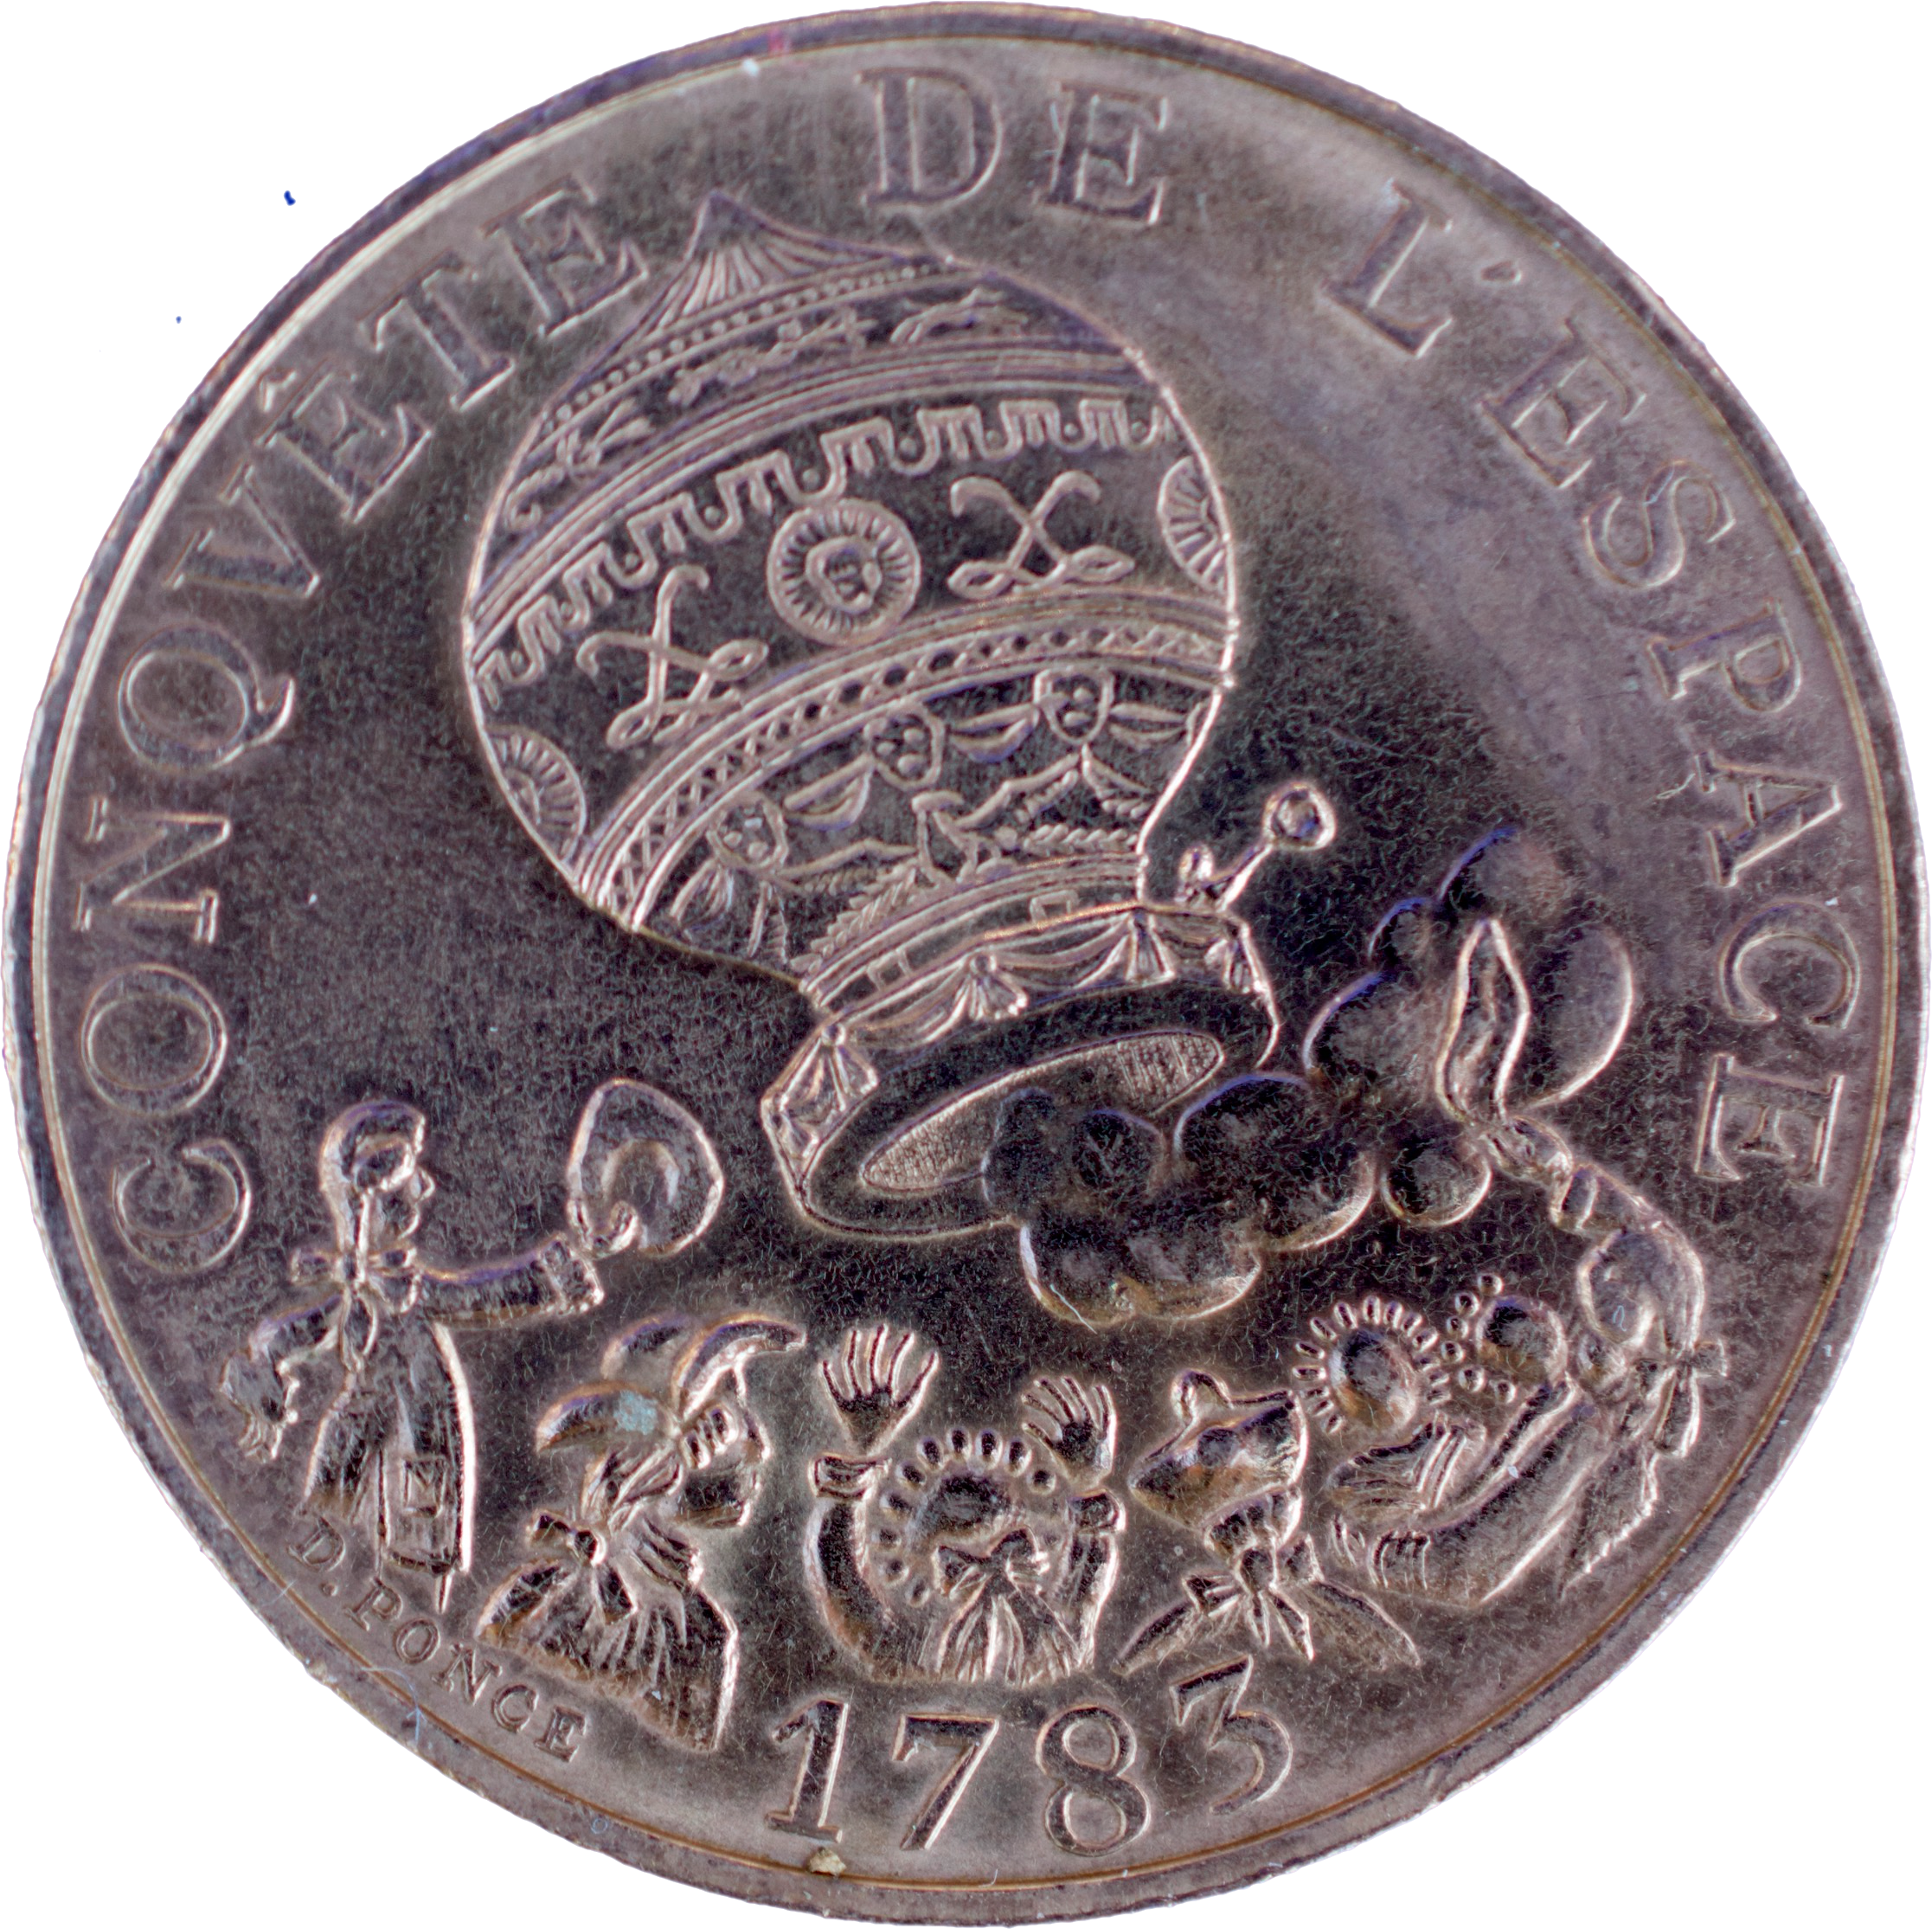 10 francs Conquête de l’espace 1983 droit